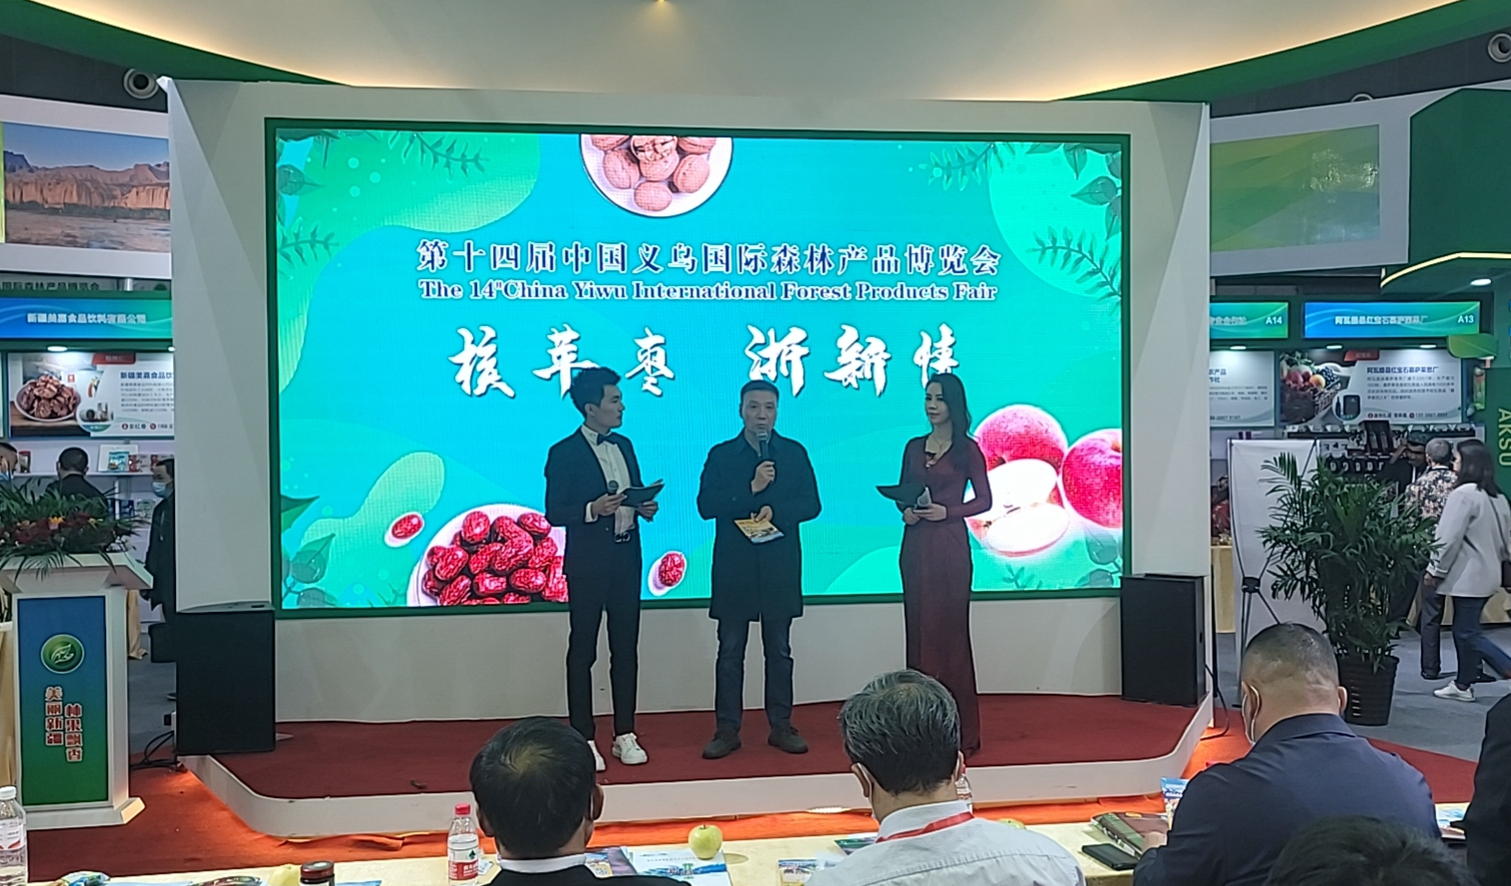 沙迪克公司参加第十四届中国义乌国际森林产品博览会